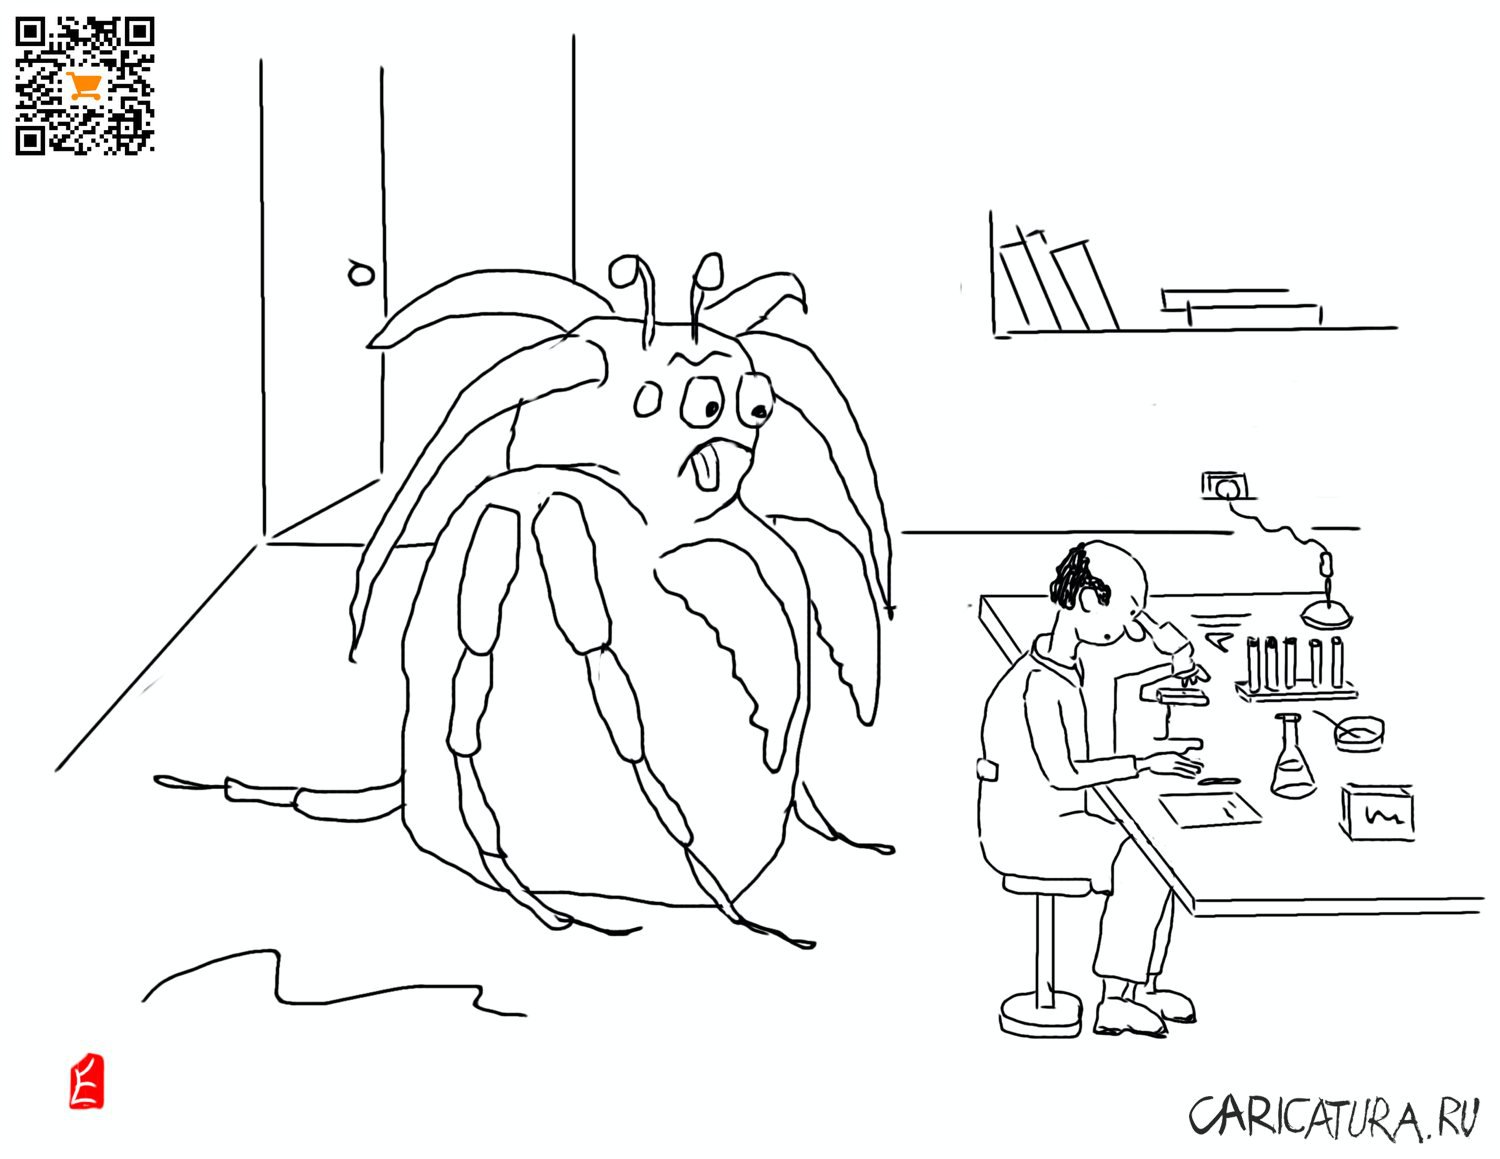 Карикатура "Судя по всему, у вас аллергия на крабов!", Евгений Лапин